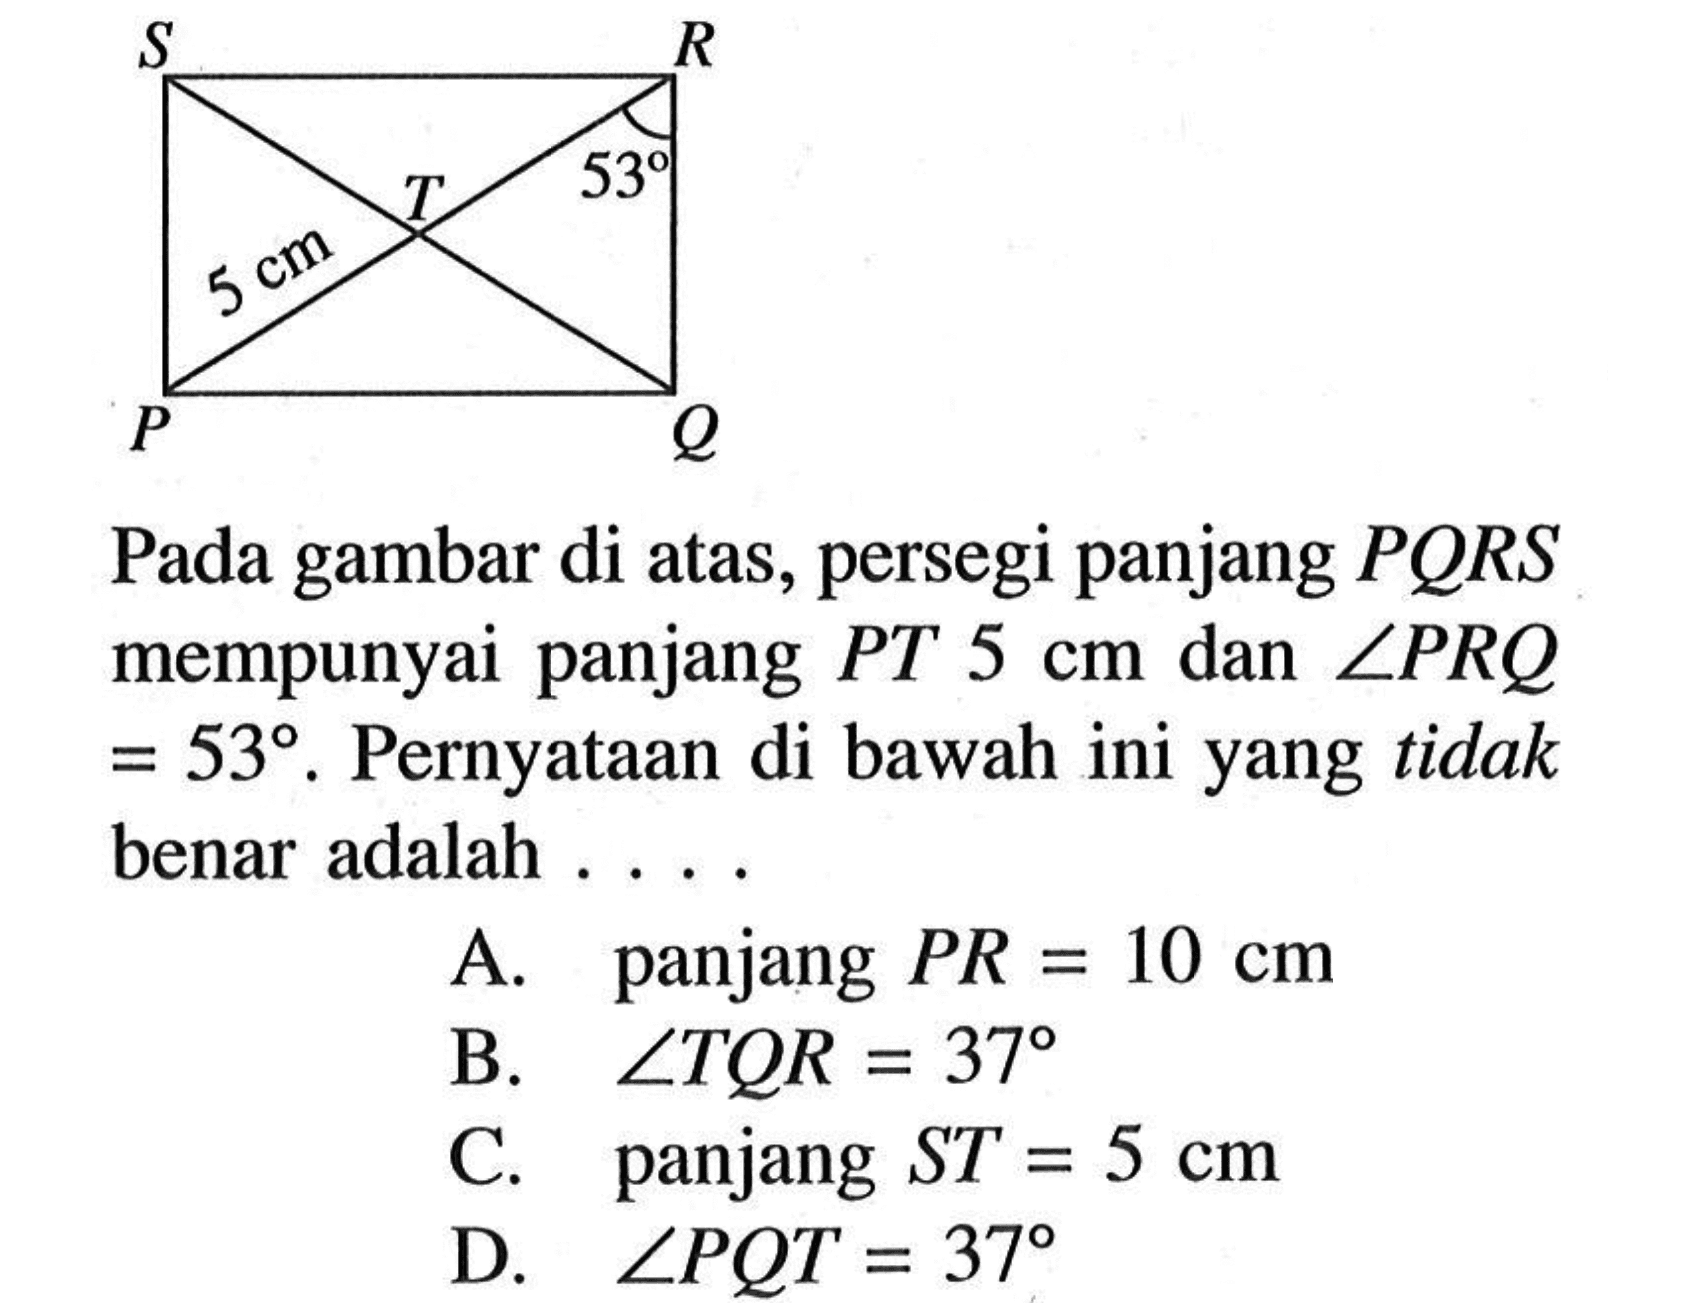 Pada gambar di atas, persegi panjang PQRS mempunyai panjang PT 5 cm dan sudut PRQ=53. Pernyataan di bawah ini yang tidak benar adalah.... A. panjang PR=10 cm B. sudut TQR=37 C. panjang ST=5 cm D. sudut PQT=37 